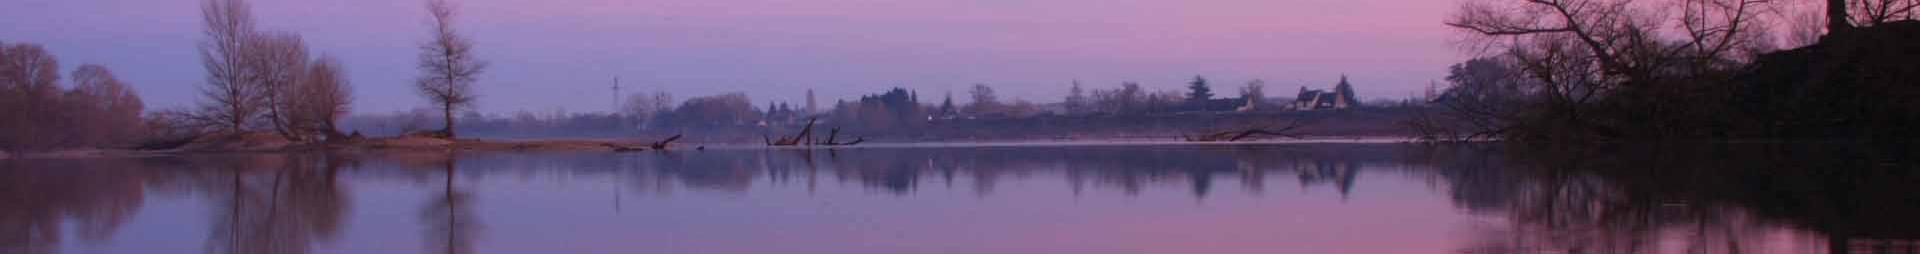 coucher de soleil rose sur lac_milieux aquatiques